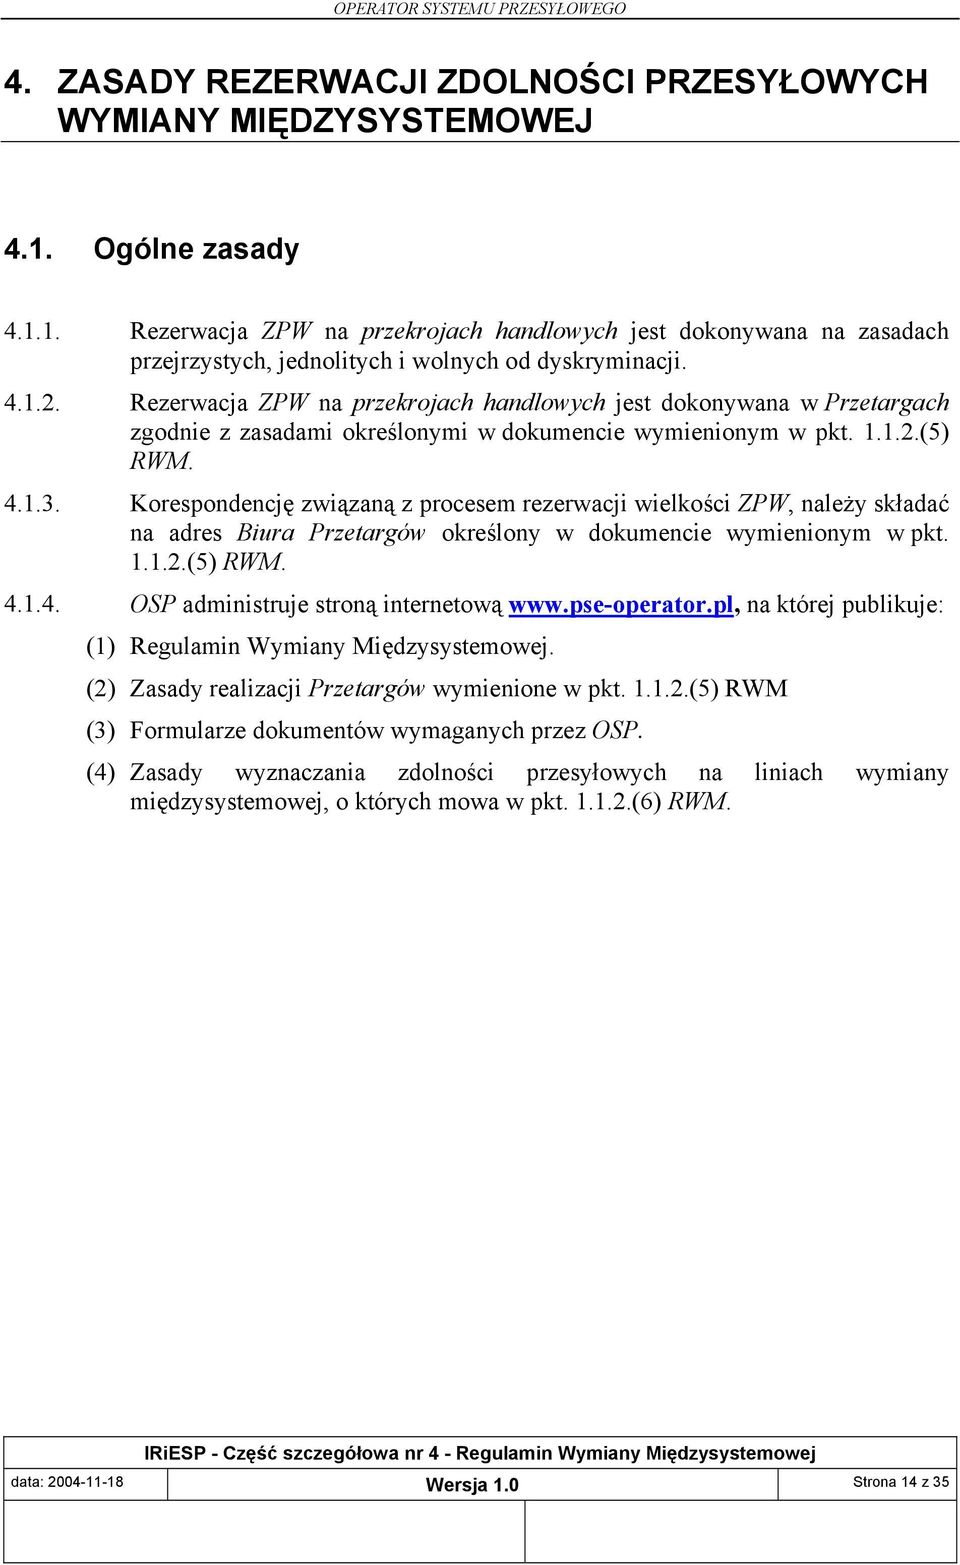 Korespondencję związaną z procesem rezerwacji wielkości ZPW, należy składać na adres Biura Przetargów określony w dokumencie wymienionym w pkt. 1.1.2.(5) RWM. 4.